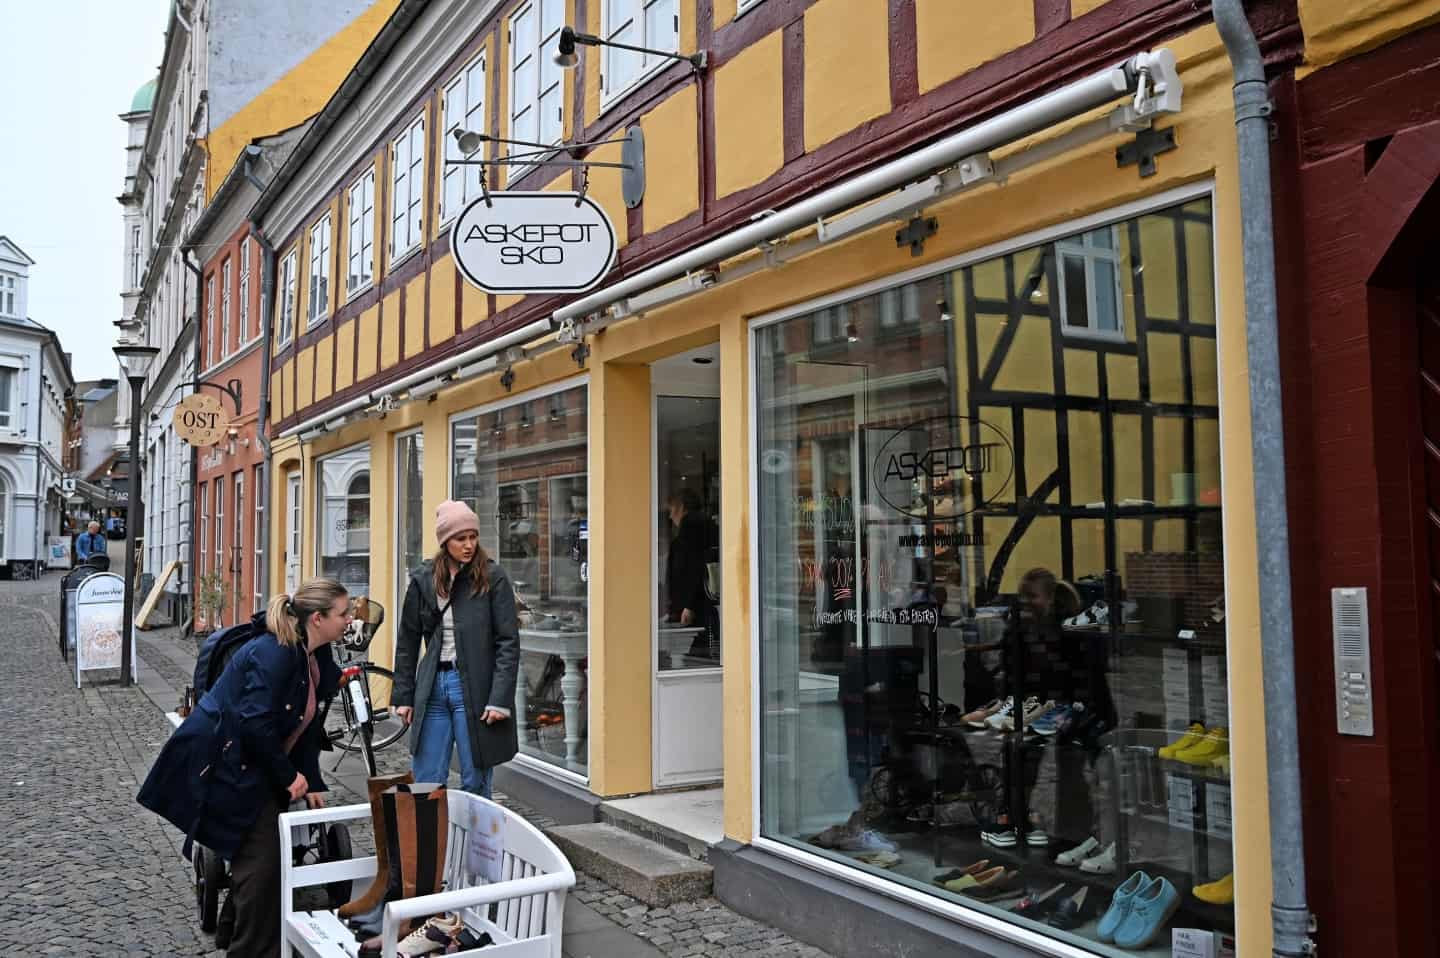 boykot Disse Dykker For fem måneder siden var ejeren bekymret over manglende opbakning: Nu  lukker hun sin skobutik i Svendborg | faa.dk